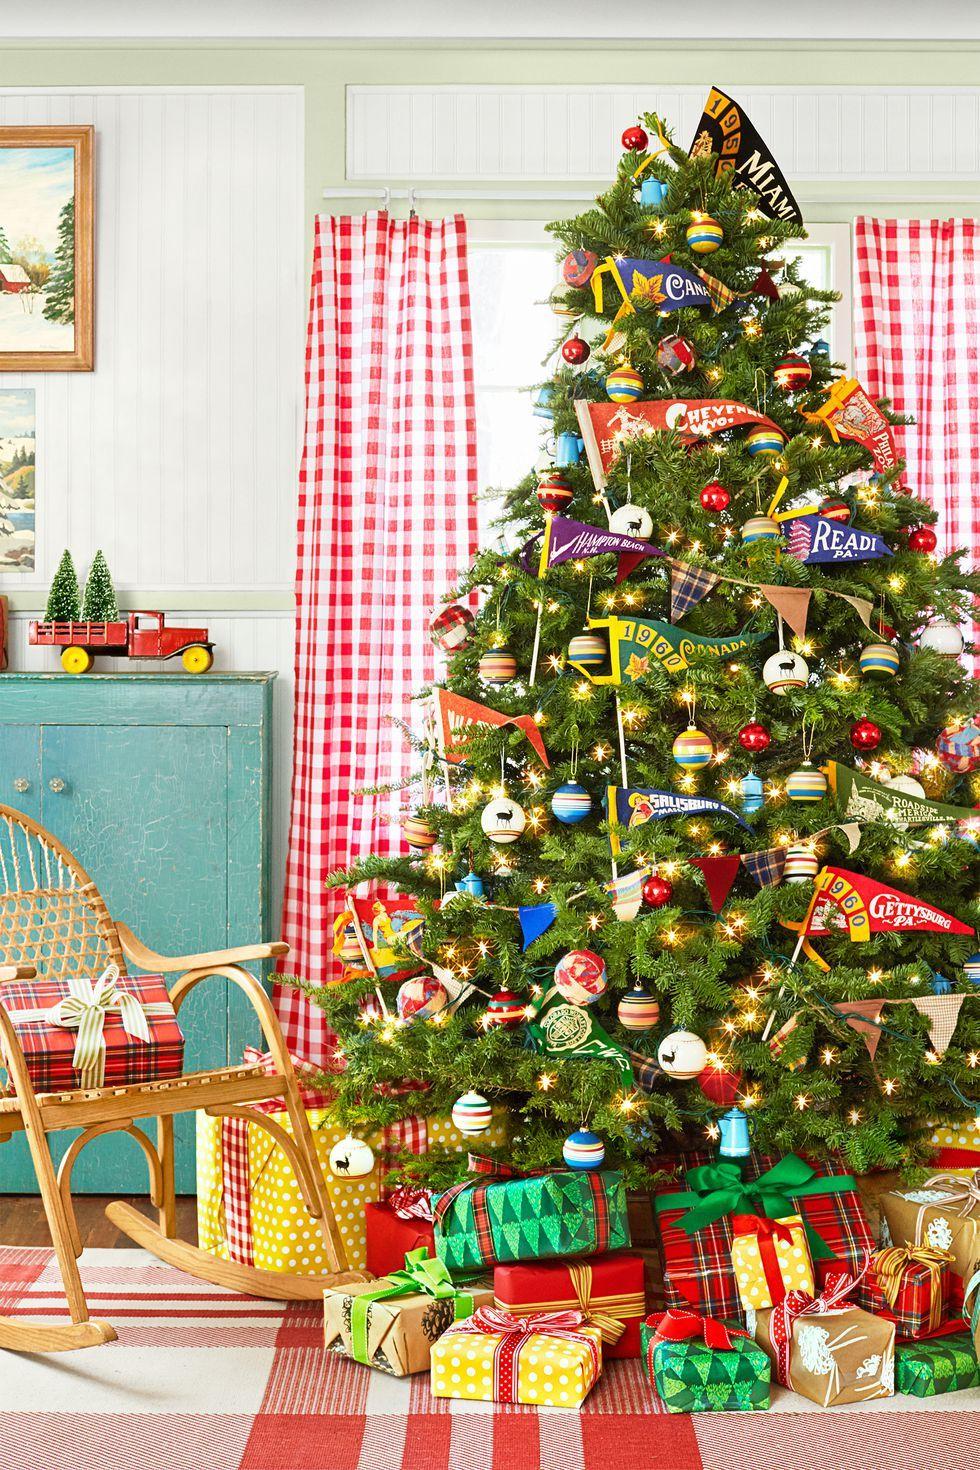 υφάσματα-στην-κορυφή-του-χριστουγεννιάτικου-δέντρου-